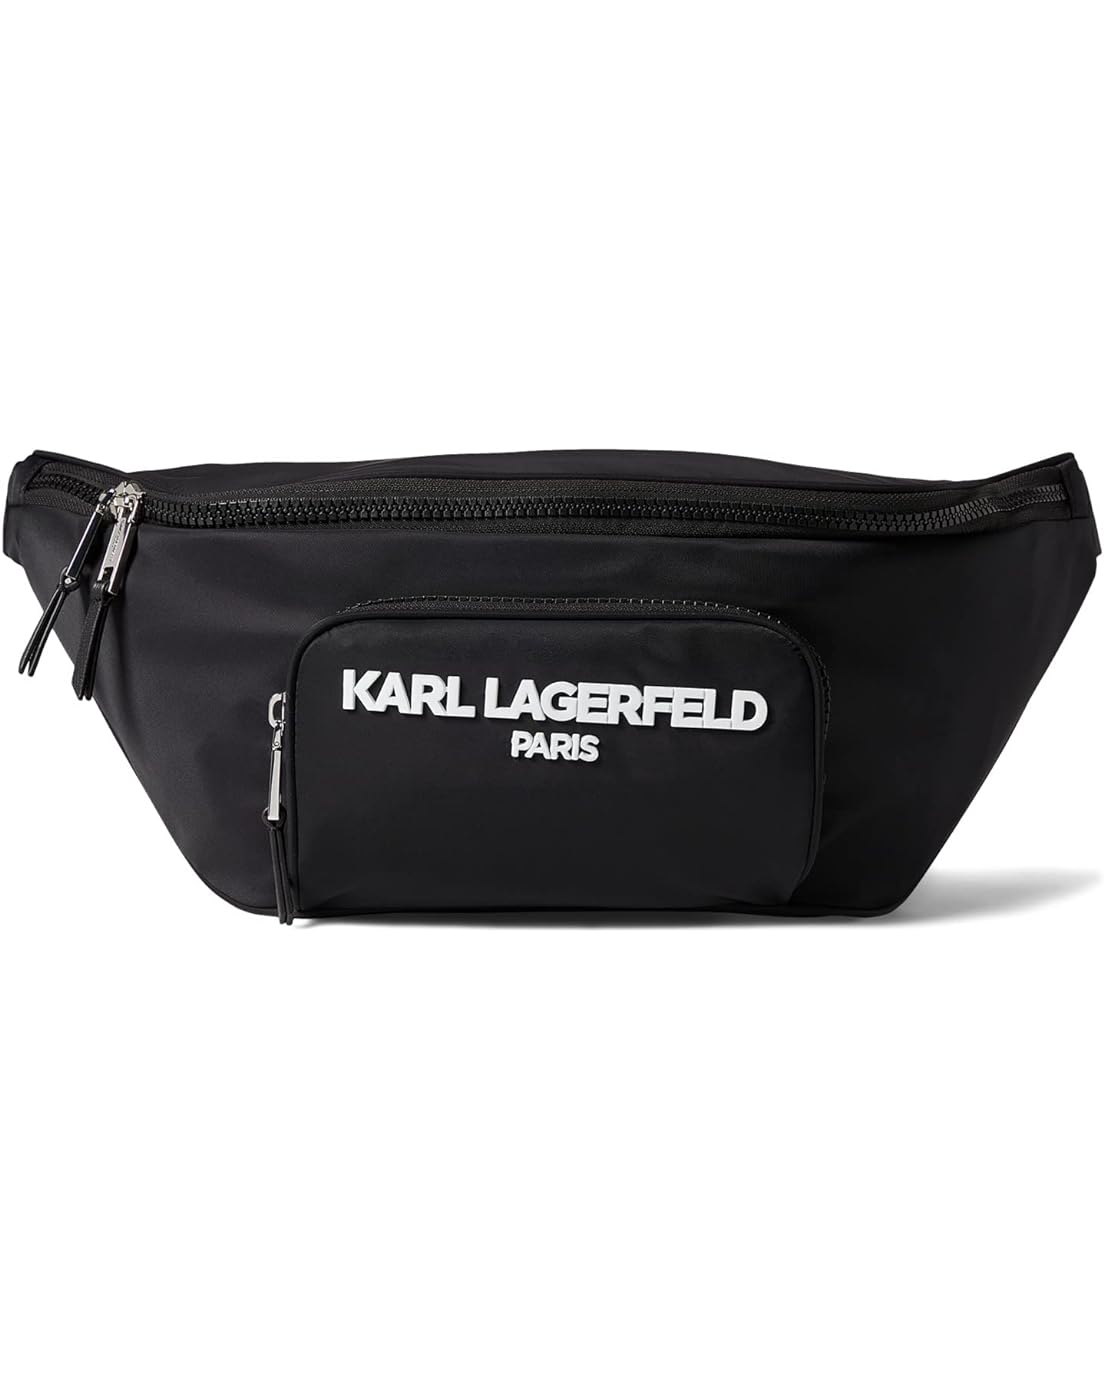 Karl Lagerfeld Paris Voyage Sling Backpack